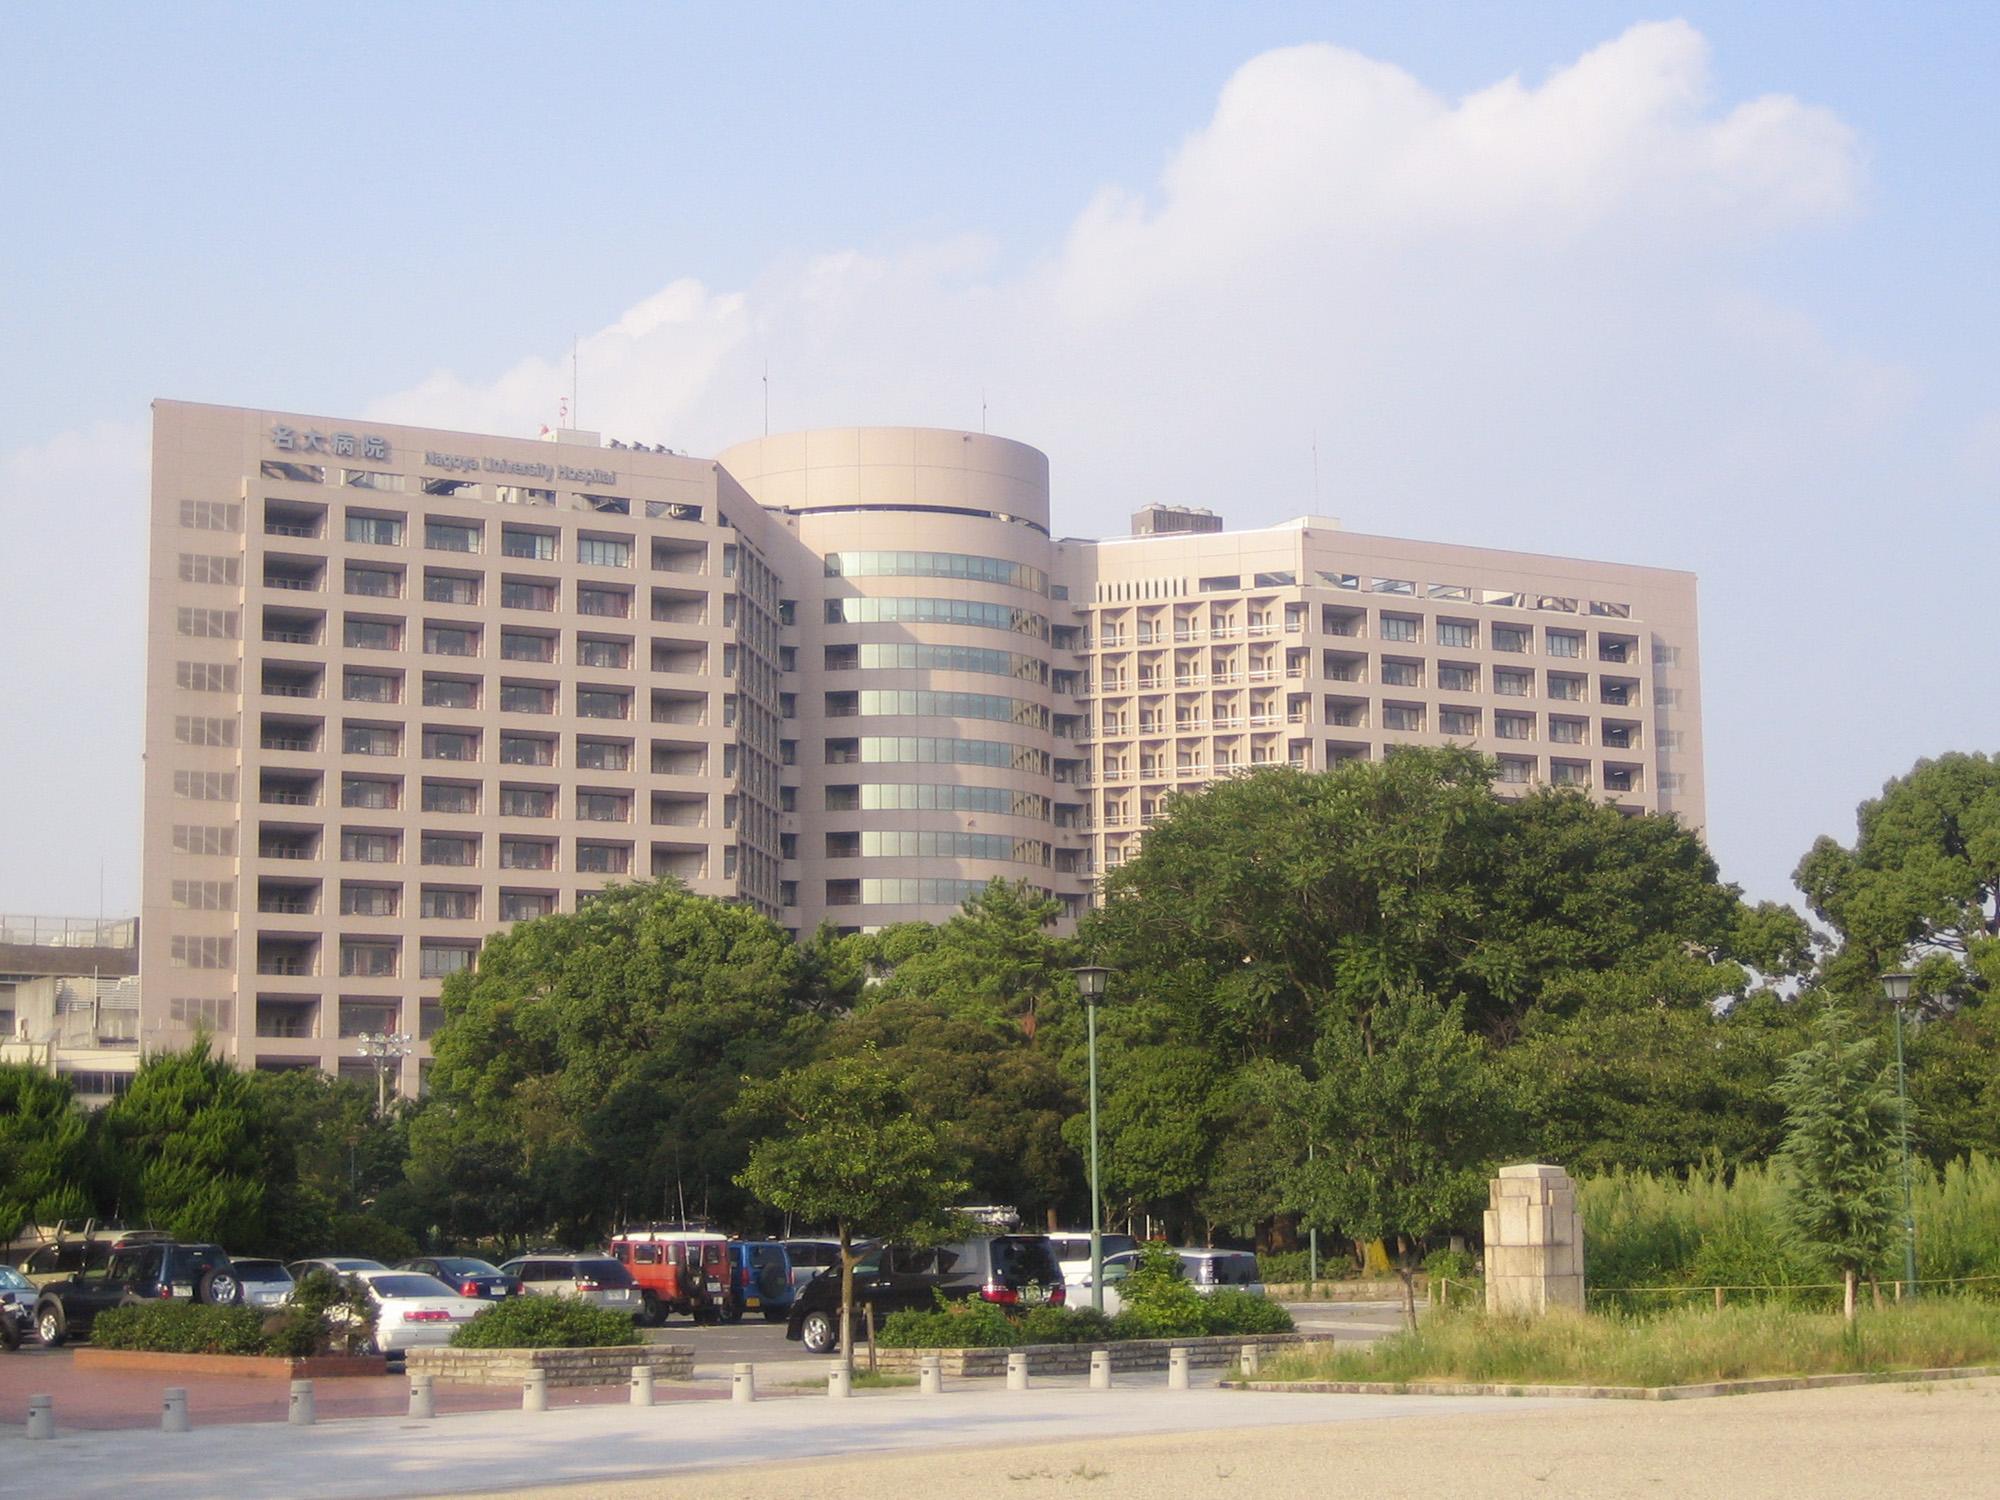 Nagoya_University_Hospital